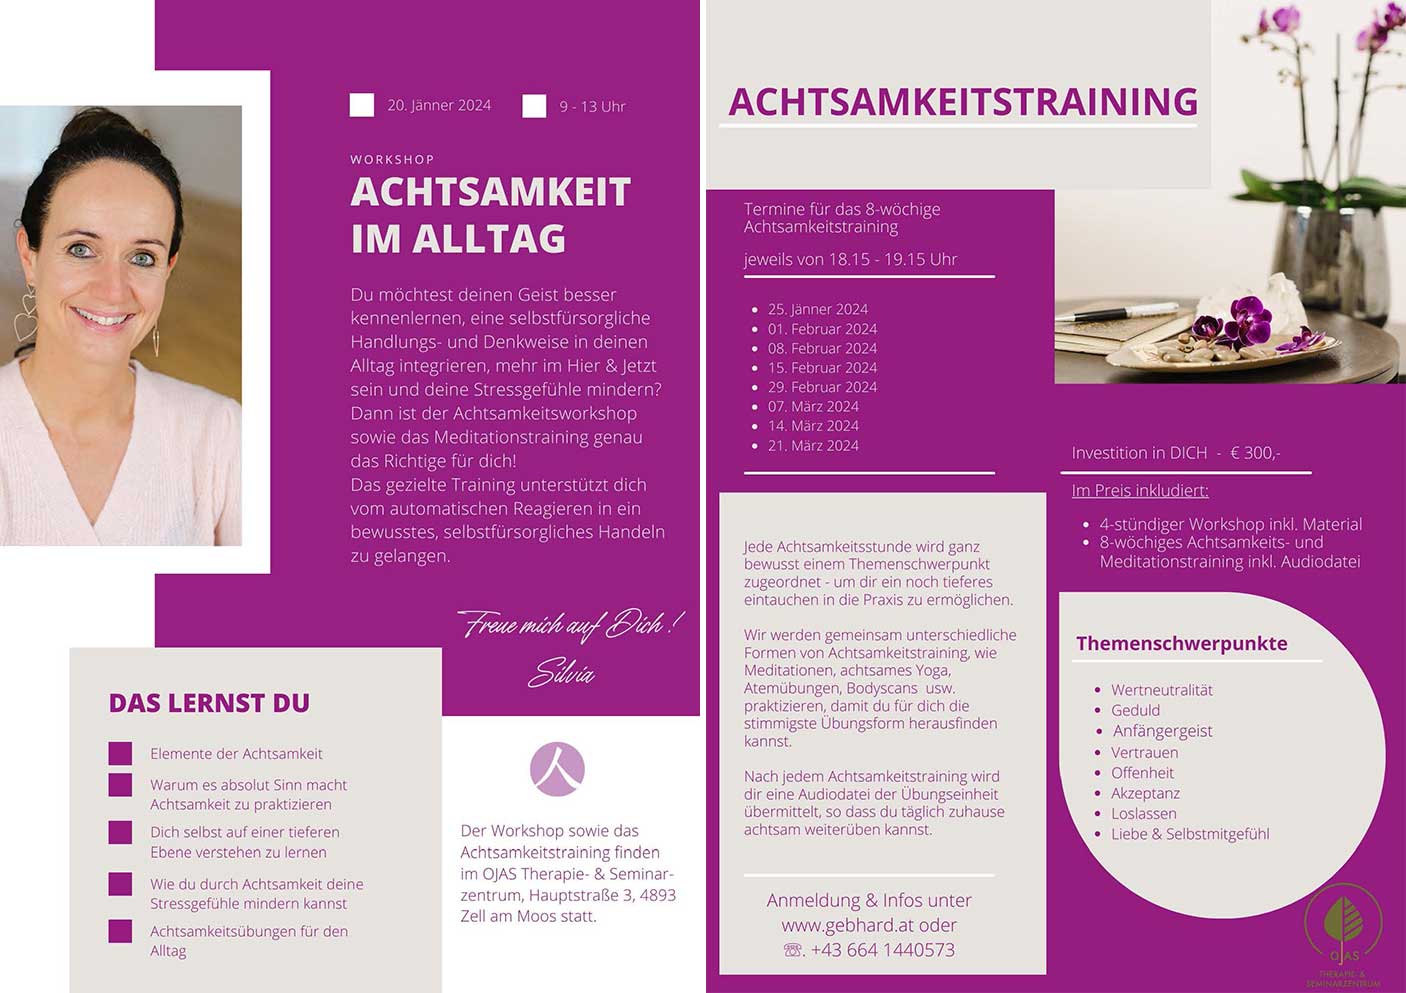 Achtsamkeitsworkshop und Meditationstraining
WORKSHOP zum Thema ACHTSAMKEIT IM ALLTAG mit Silvia Gebhard
